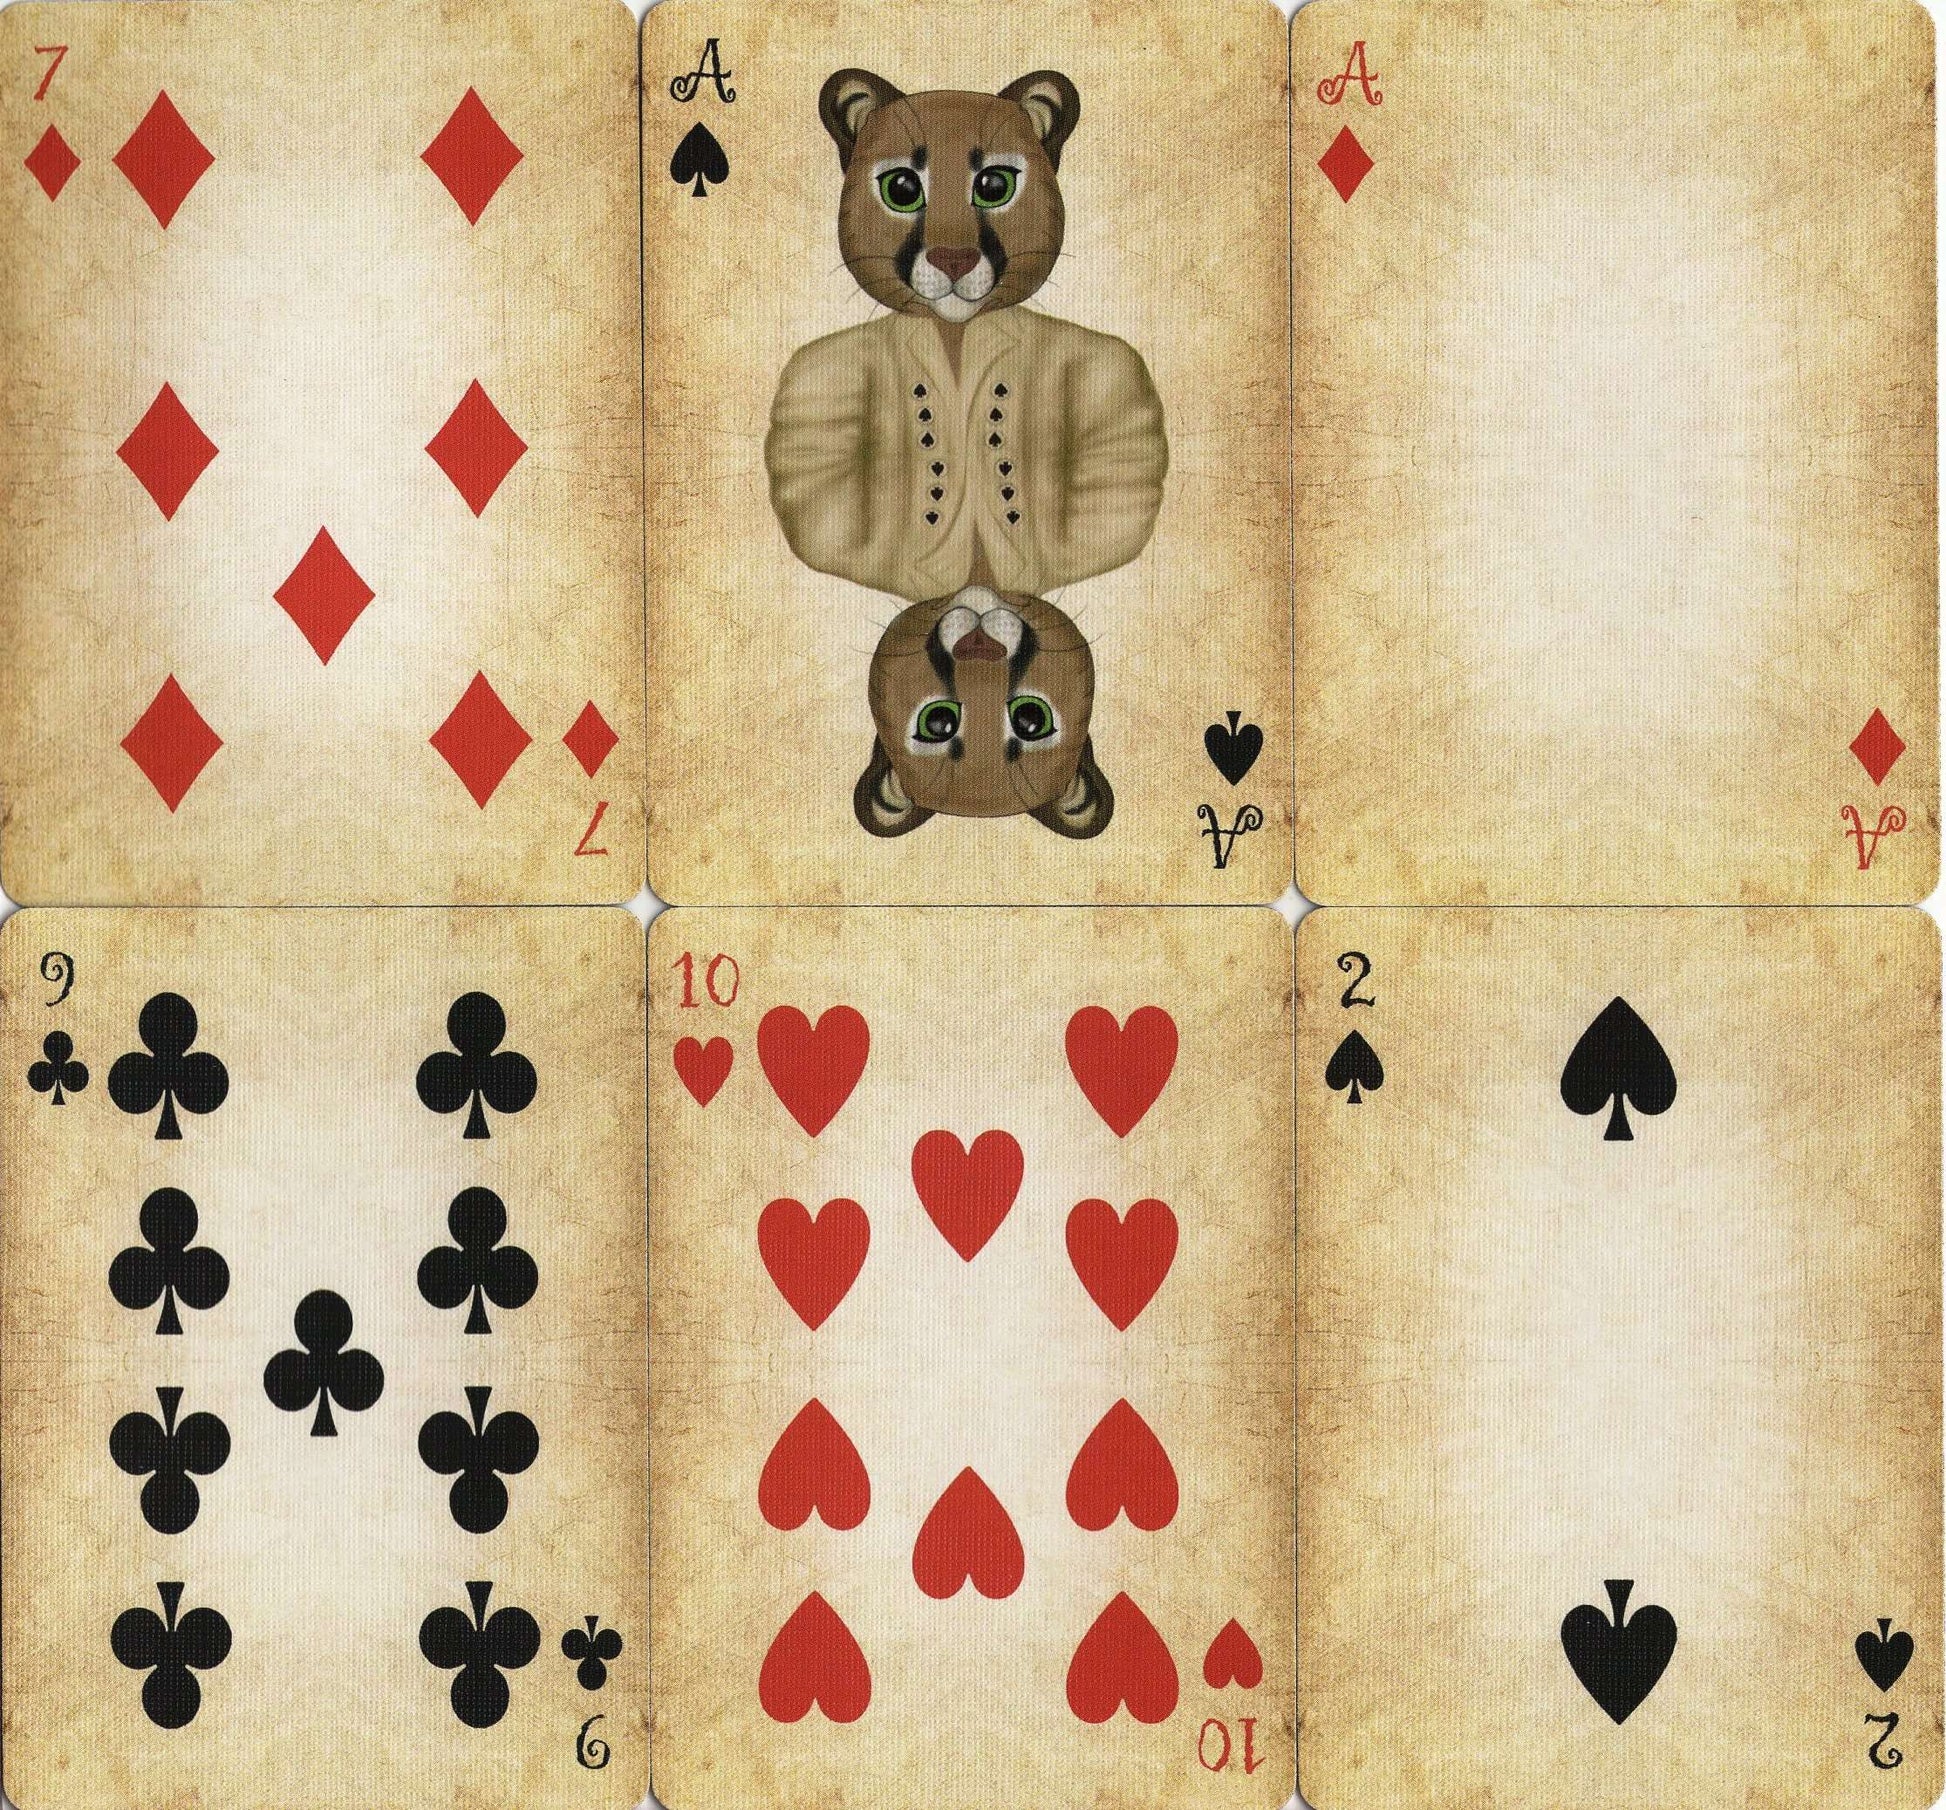 PlayingCardDecks.com-Friendly Felines Playing Cards USPCC